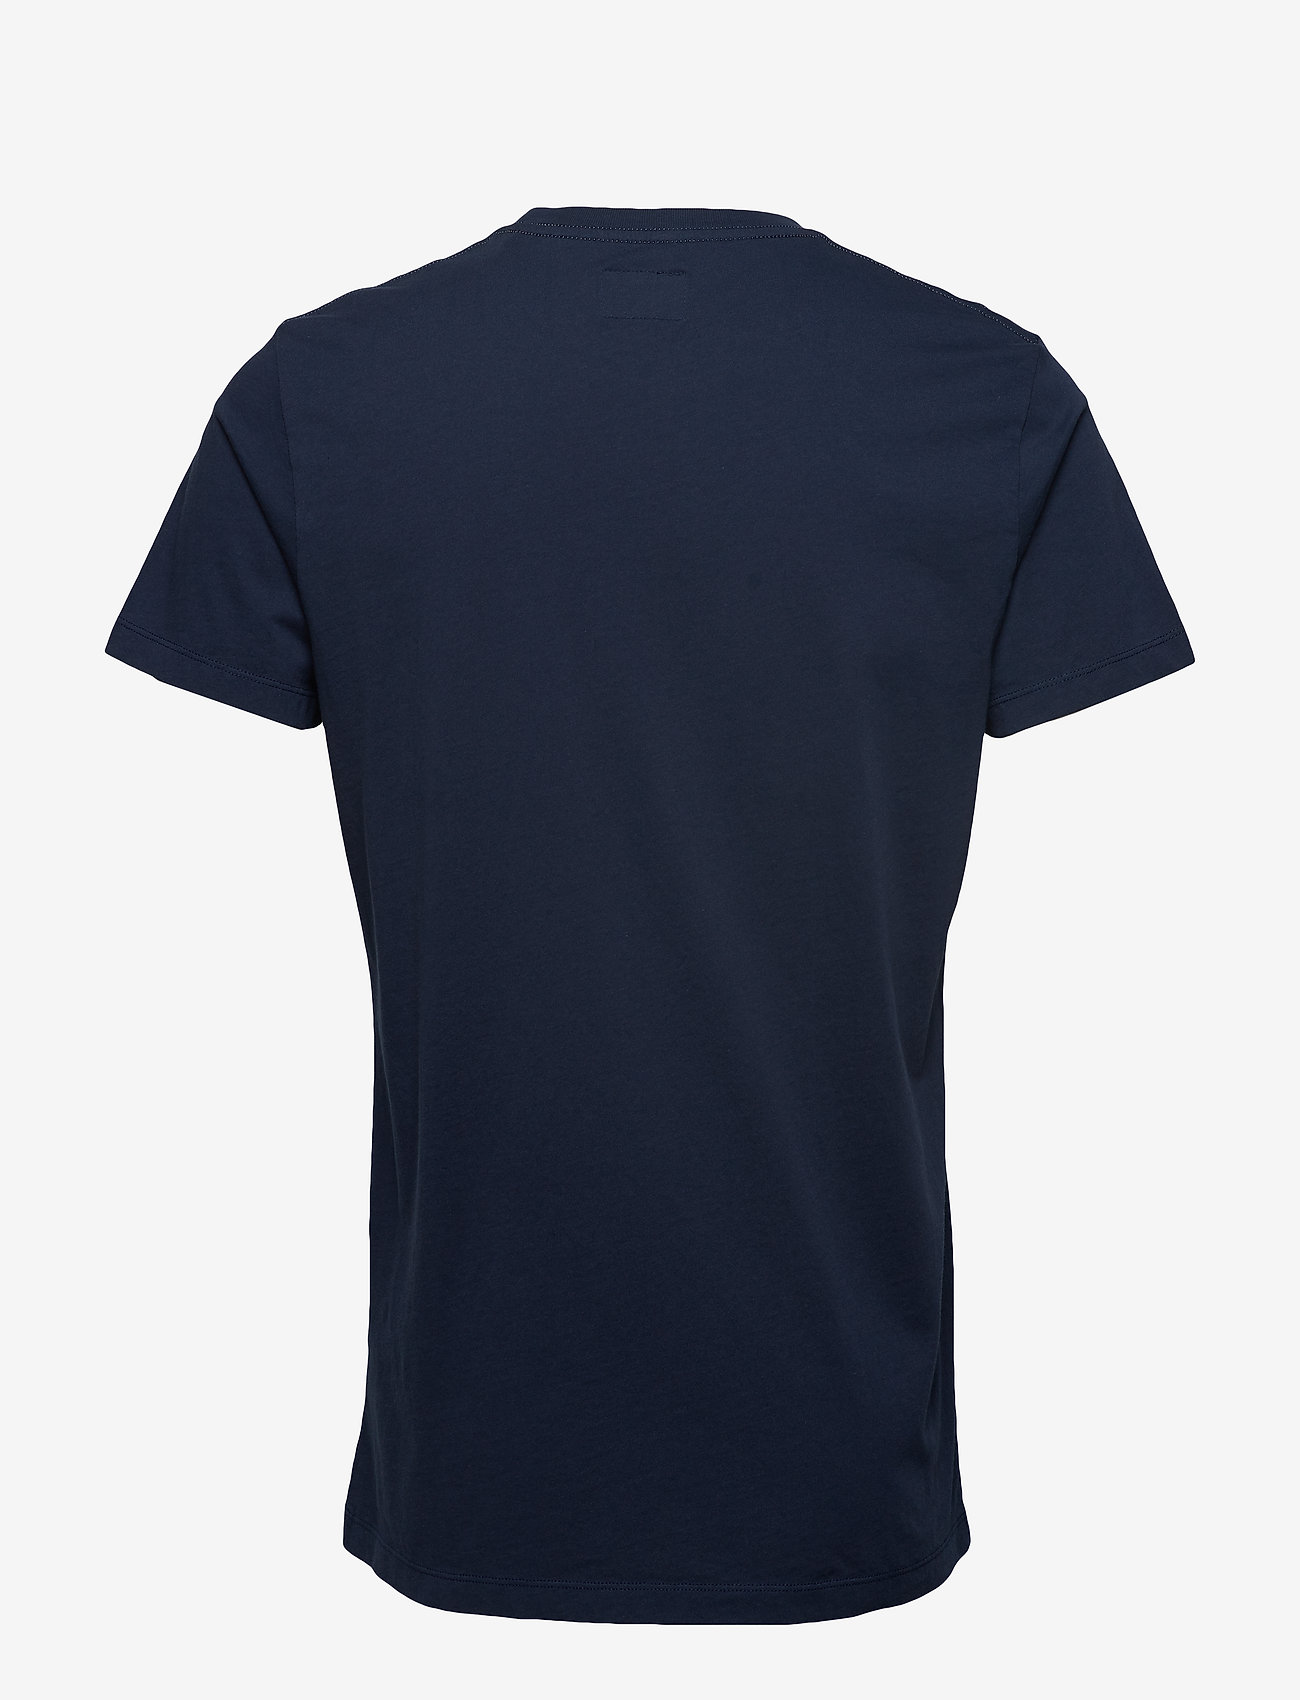 Hackett London - SS LOGO TEE - laisvalaikio marškinėliai - 5cynavy/grey - 1